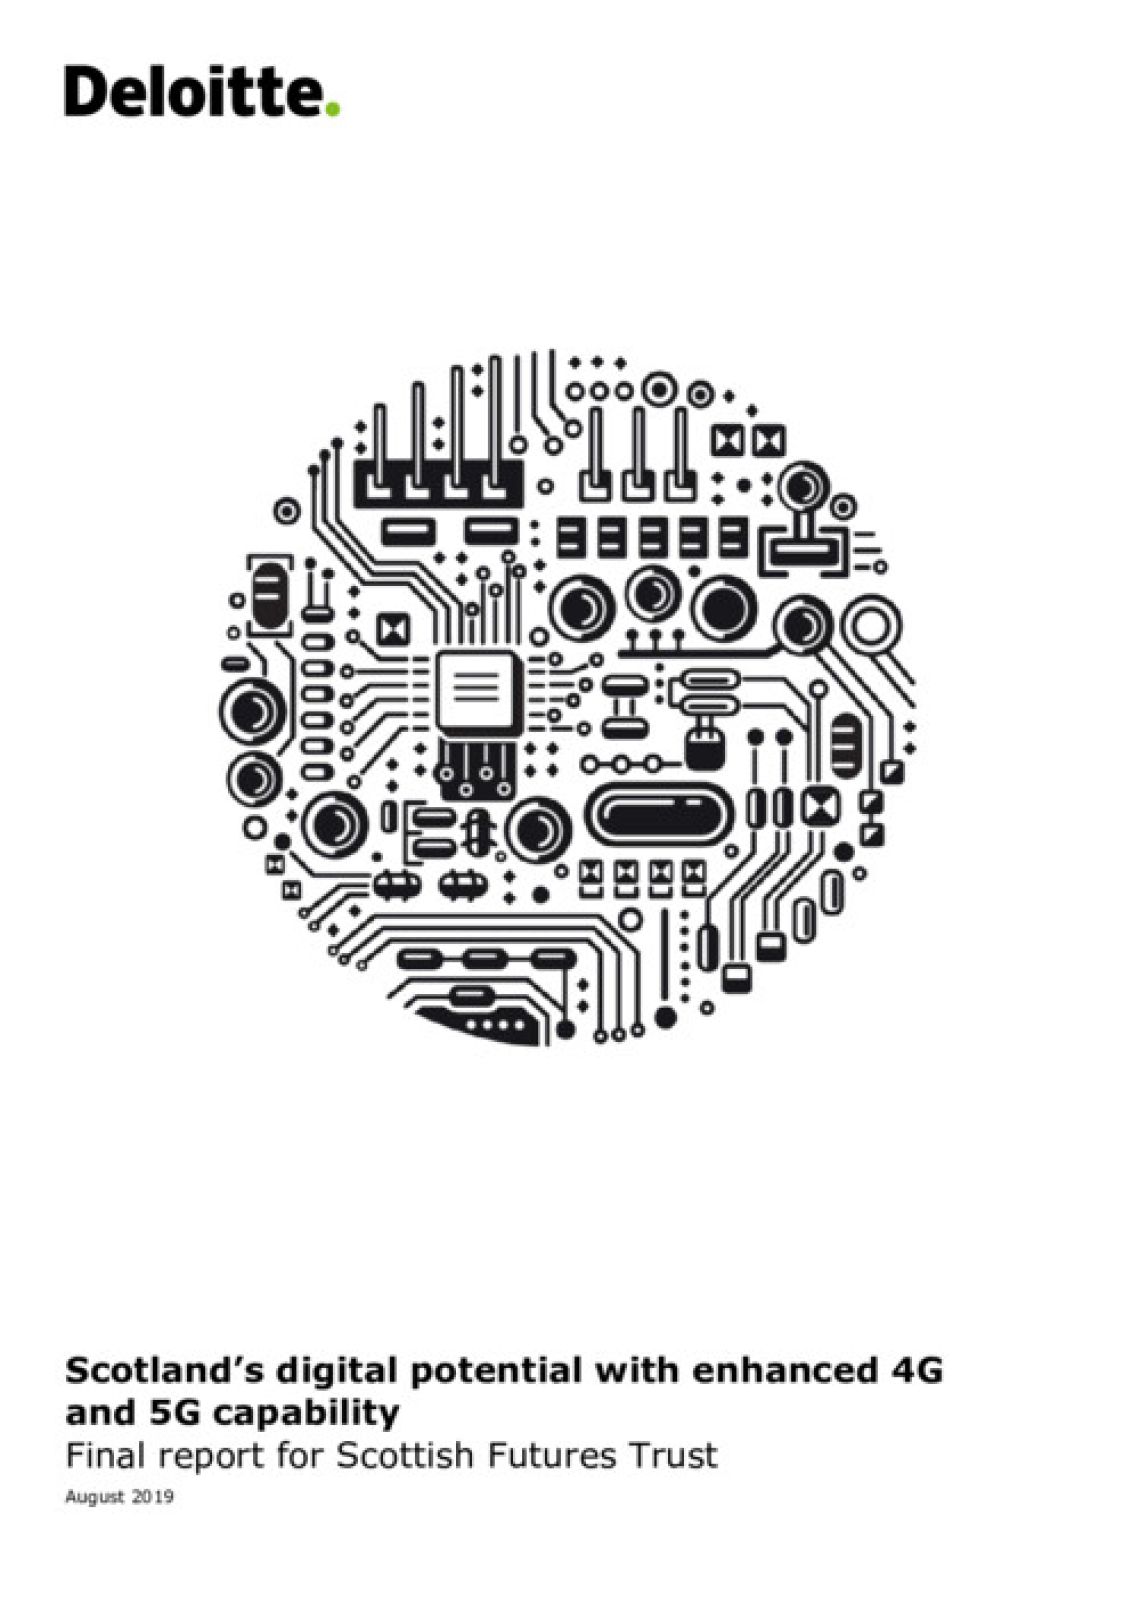 Scotland's Digital Potential - SFT Report cover